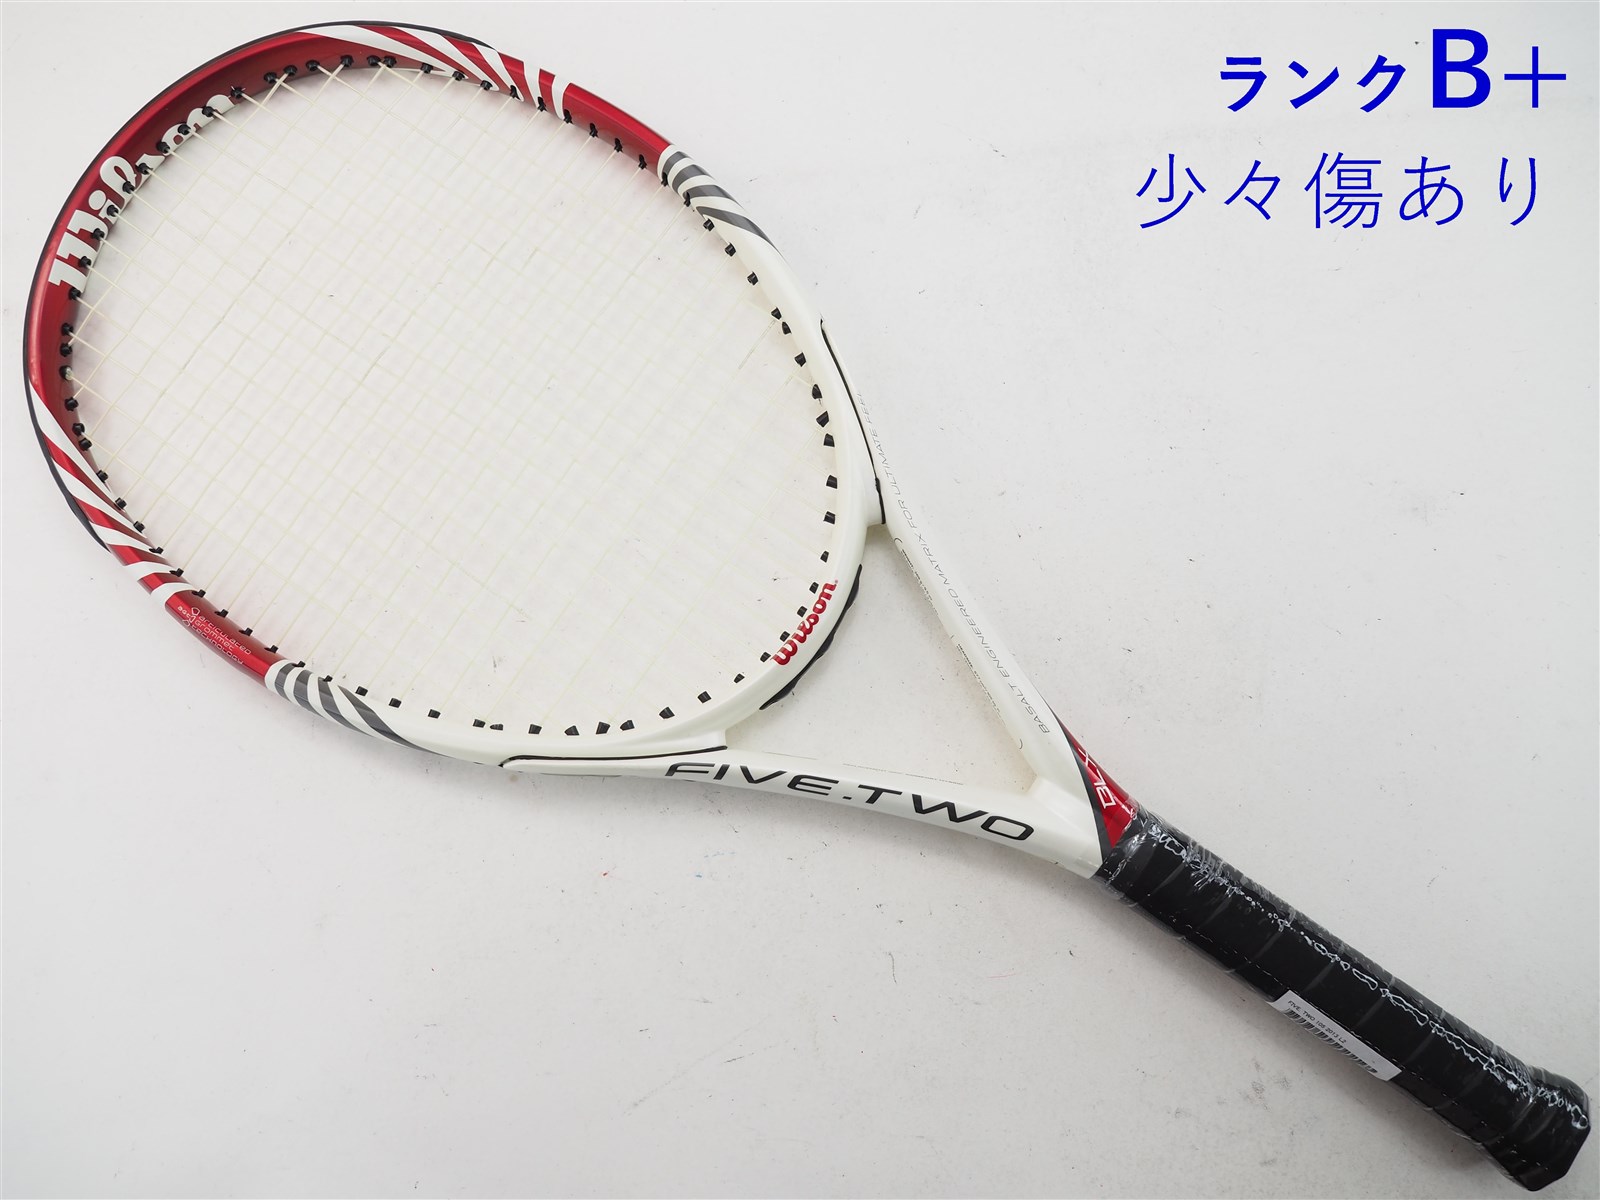 テニスラケット ウィルソン ファイブ ツー 105 2013年モデル (L2